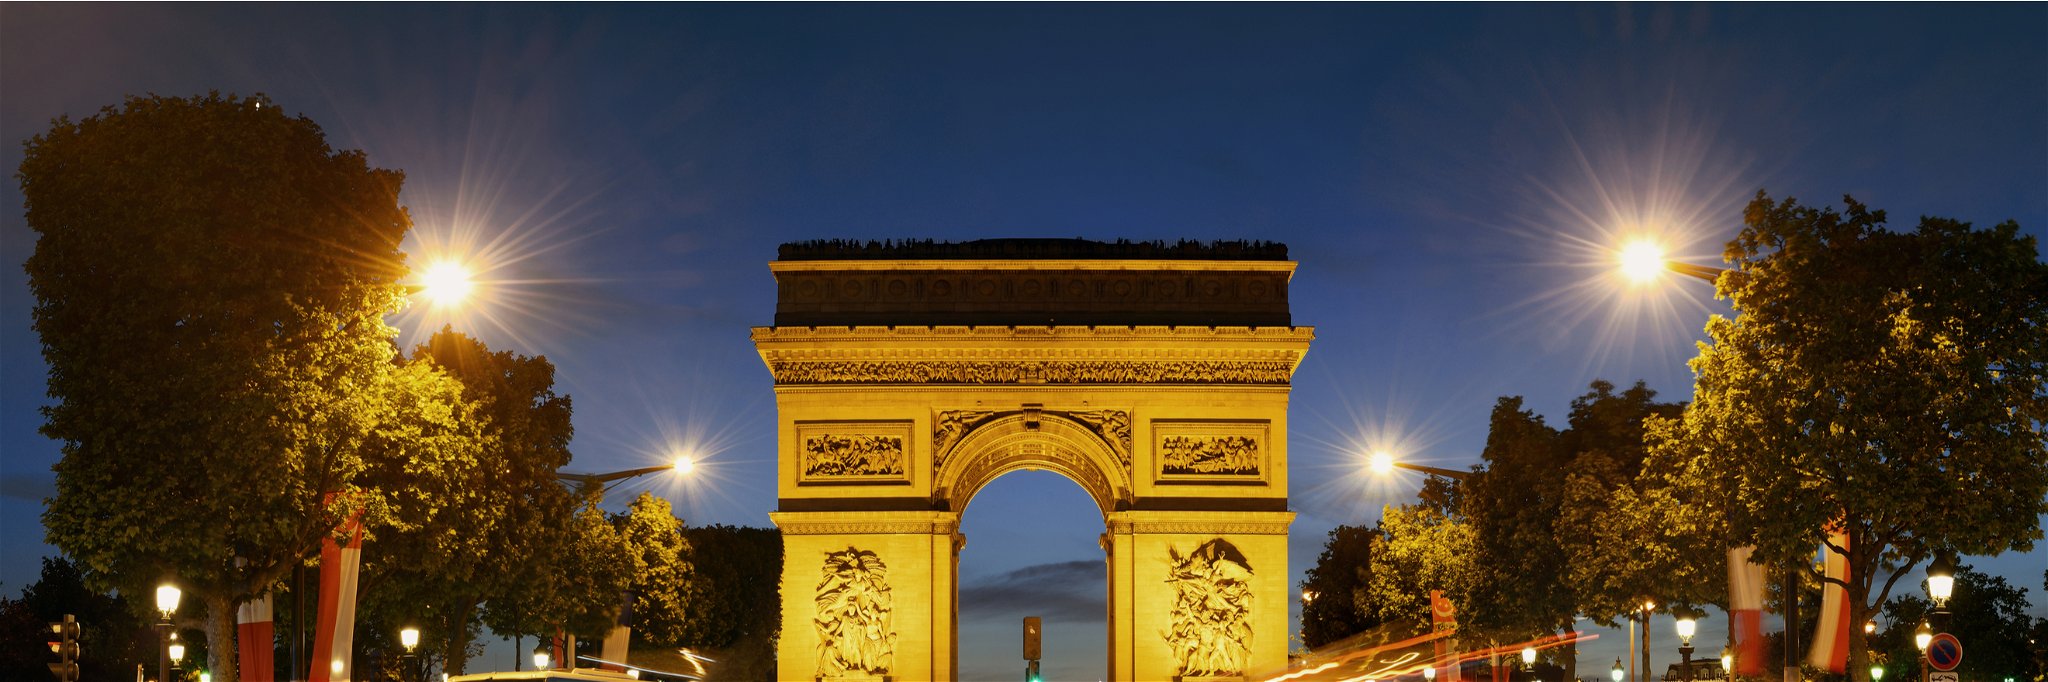 Paris' famous Arc de Triomphe at night